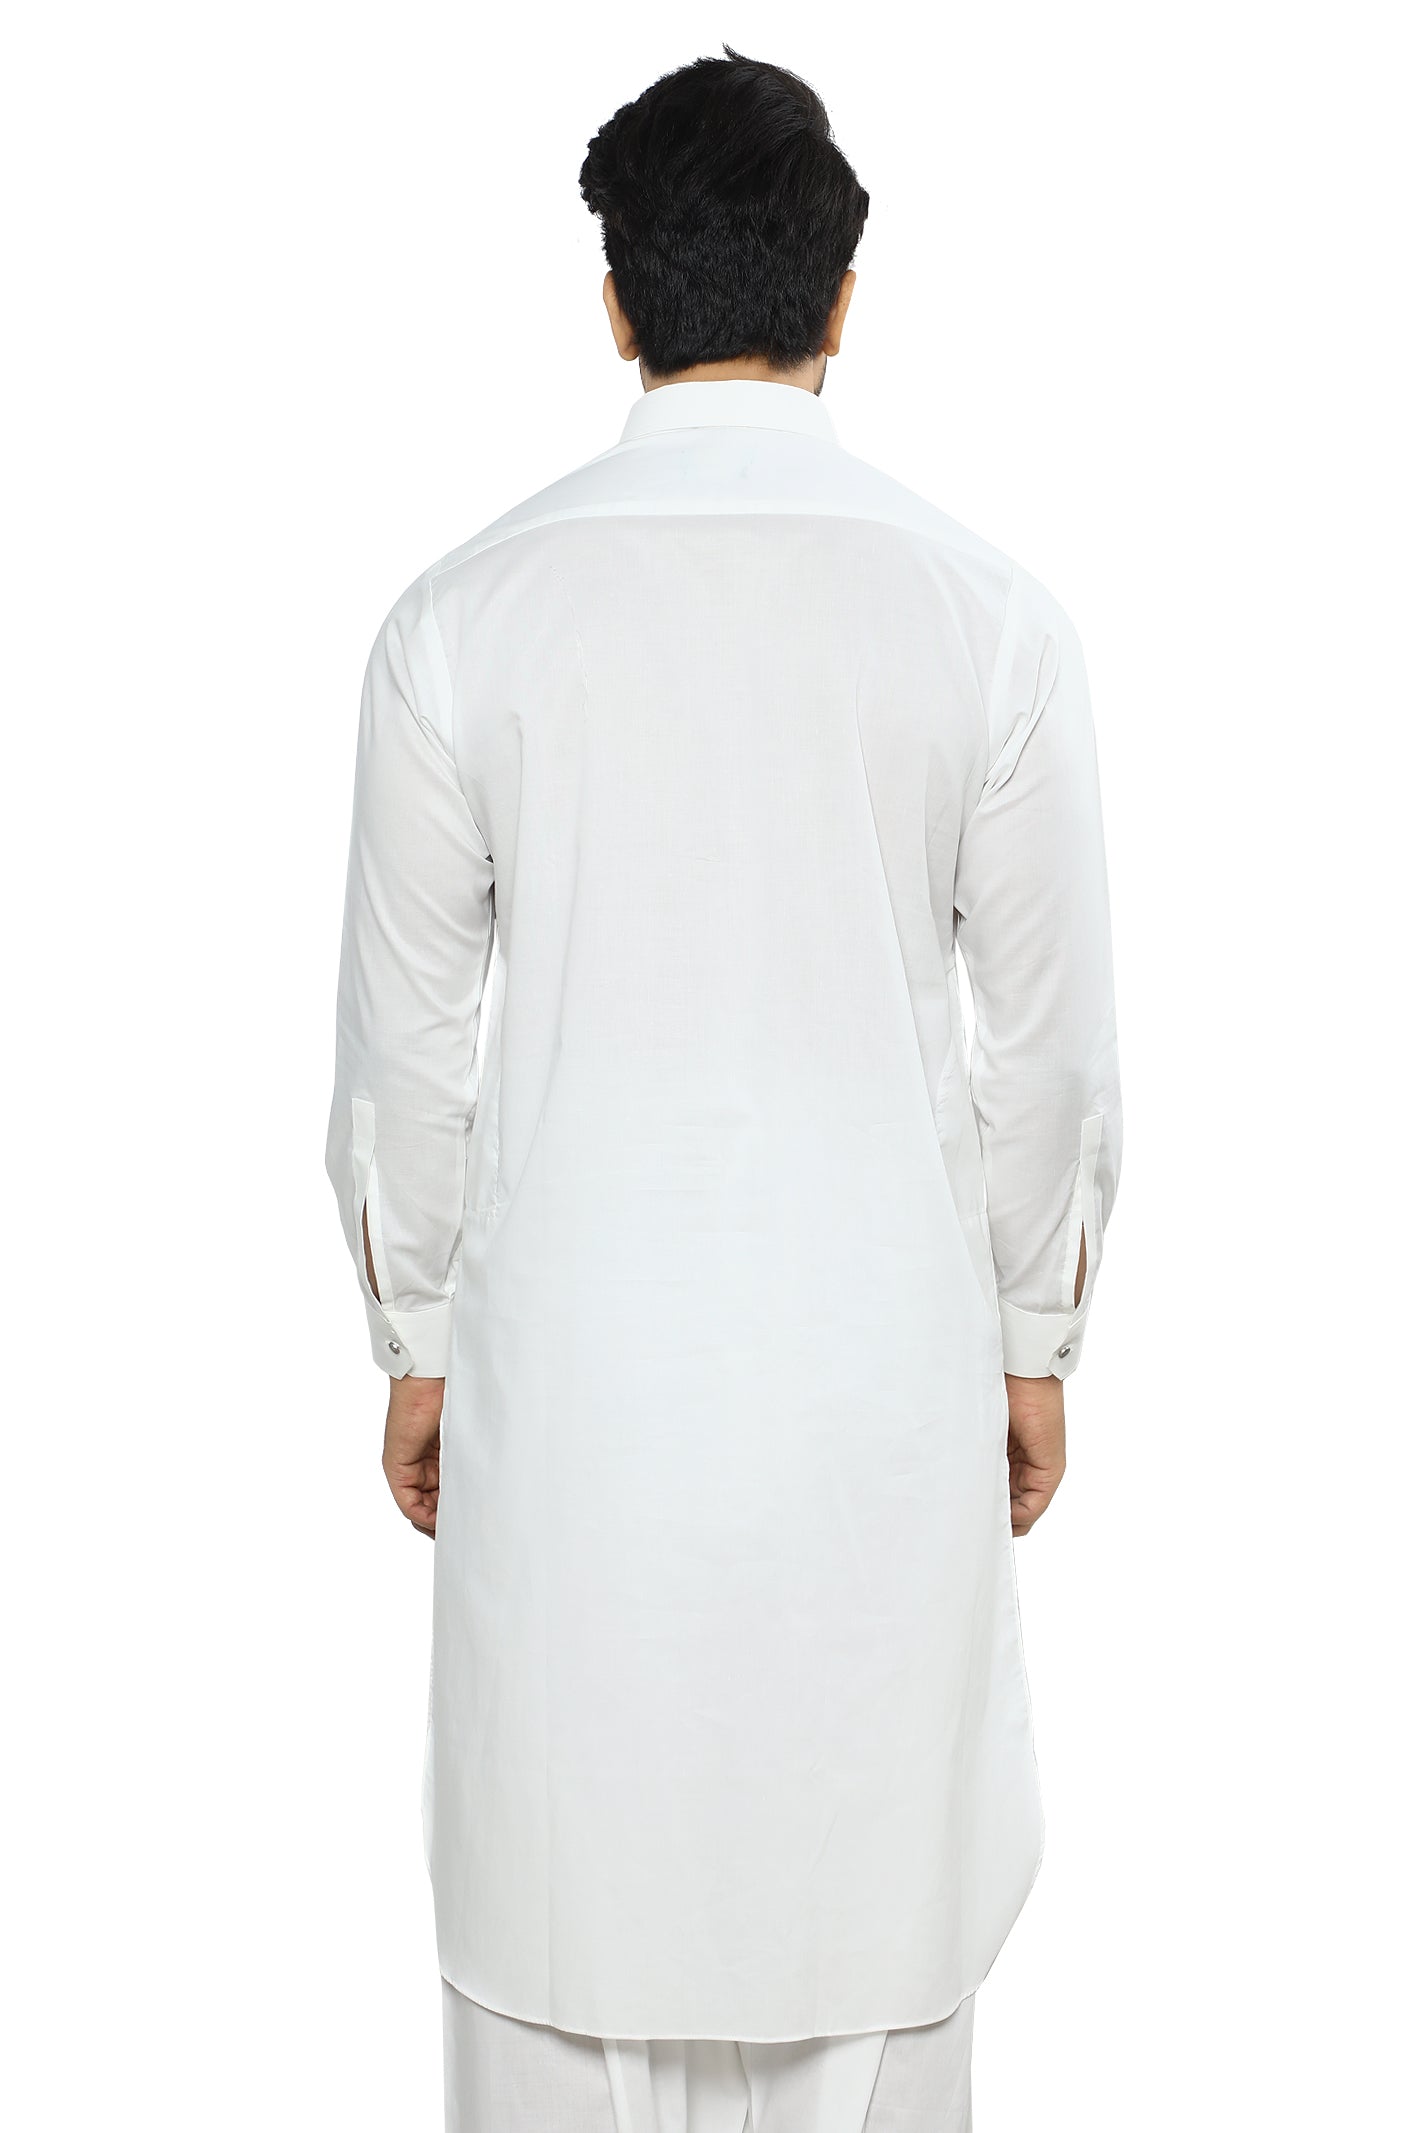 Formal Shalwar Suit for Men SKU: EG3043-OFFWHITE - Diners